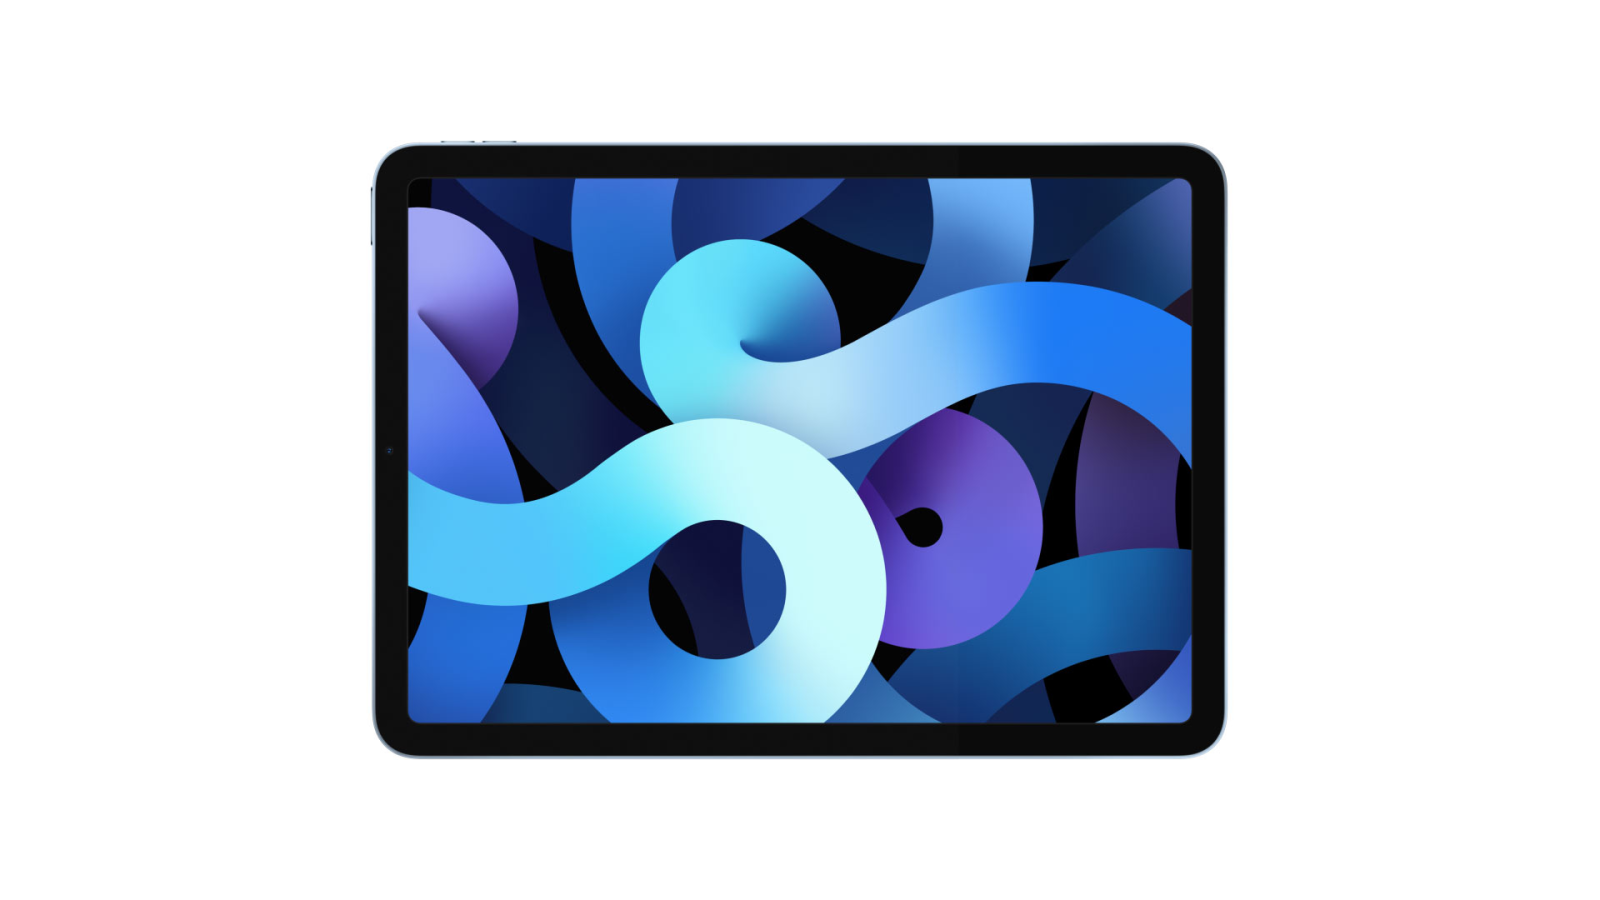 Bạn đã sẵn sàng để chiêm ngưỡng những bức ảnh nền iPad Air mới nhất? Với nhiều màu sắc mới, phong cách đầy tính nghệ thuật, đảm bảo bạn sẽ tìm thấy những điều thú vị và bất ngờ! Hãy đến với hình ảnh nền mới của iPad Air và thoả sức sáng tạo!